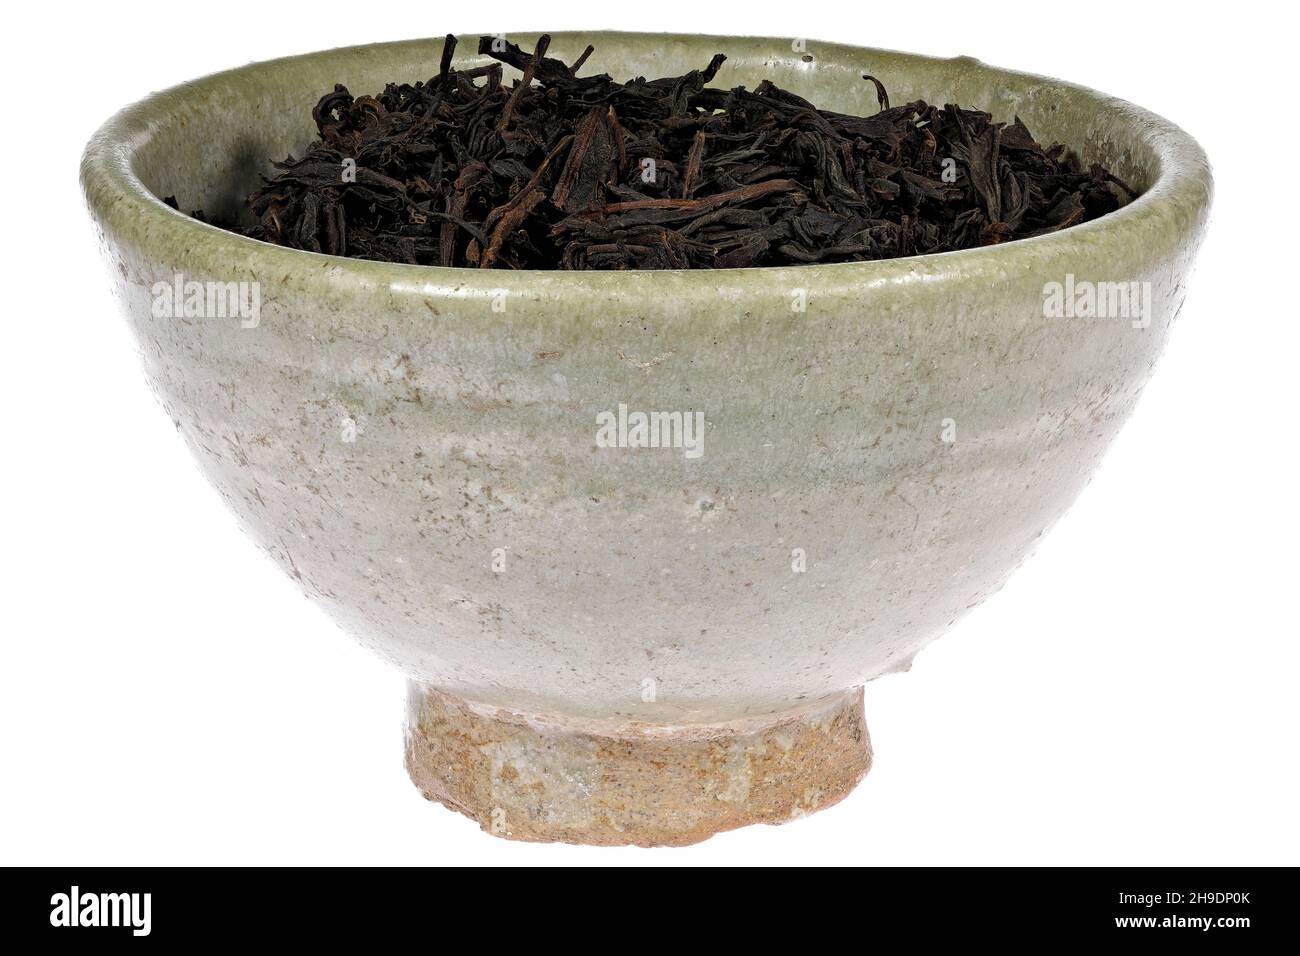 Té negro Ceilán en una vasija de barro de época aislada sobre fondo blanco Foto de stock